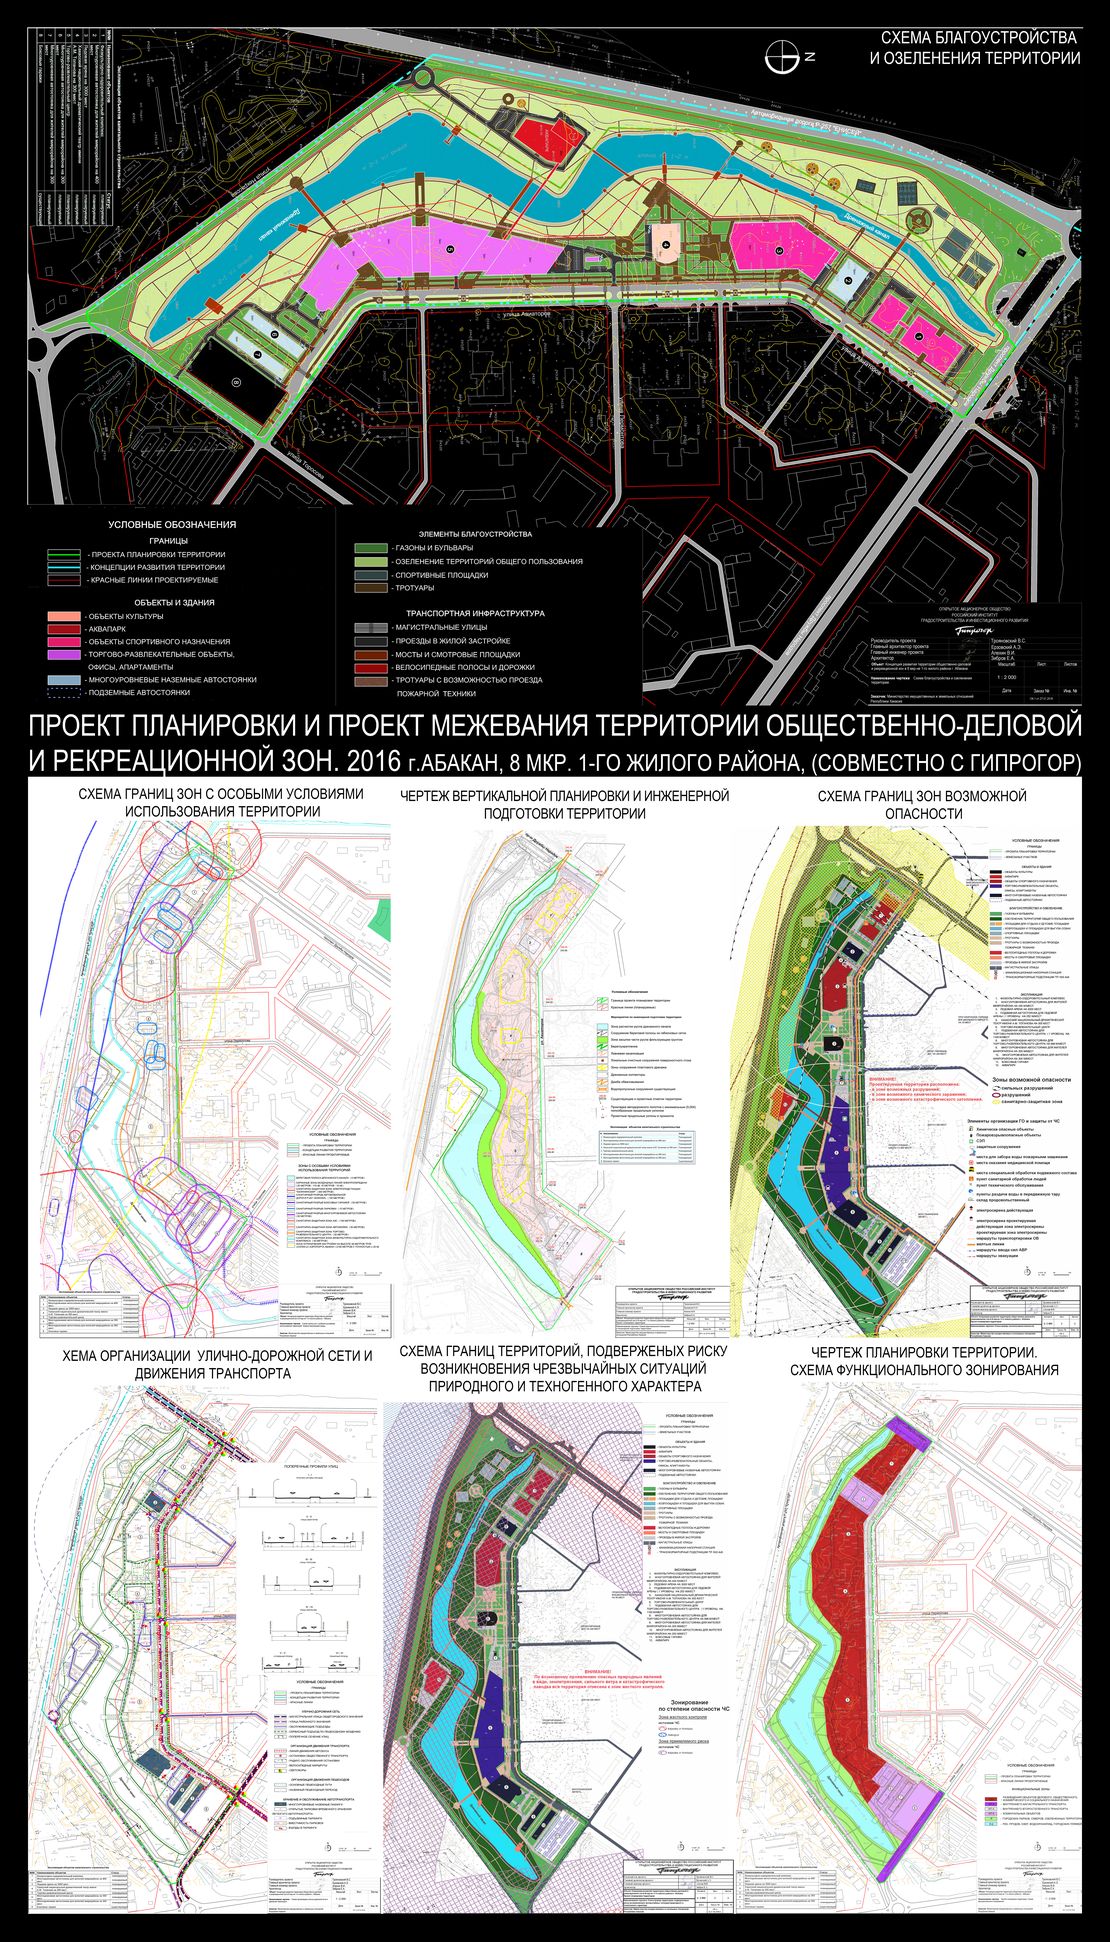 Проект планировки и проект межевания территории общественно-деловой и рекреационной зон - вариант 1